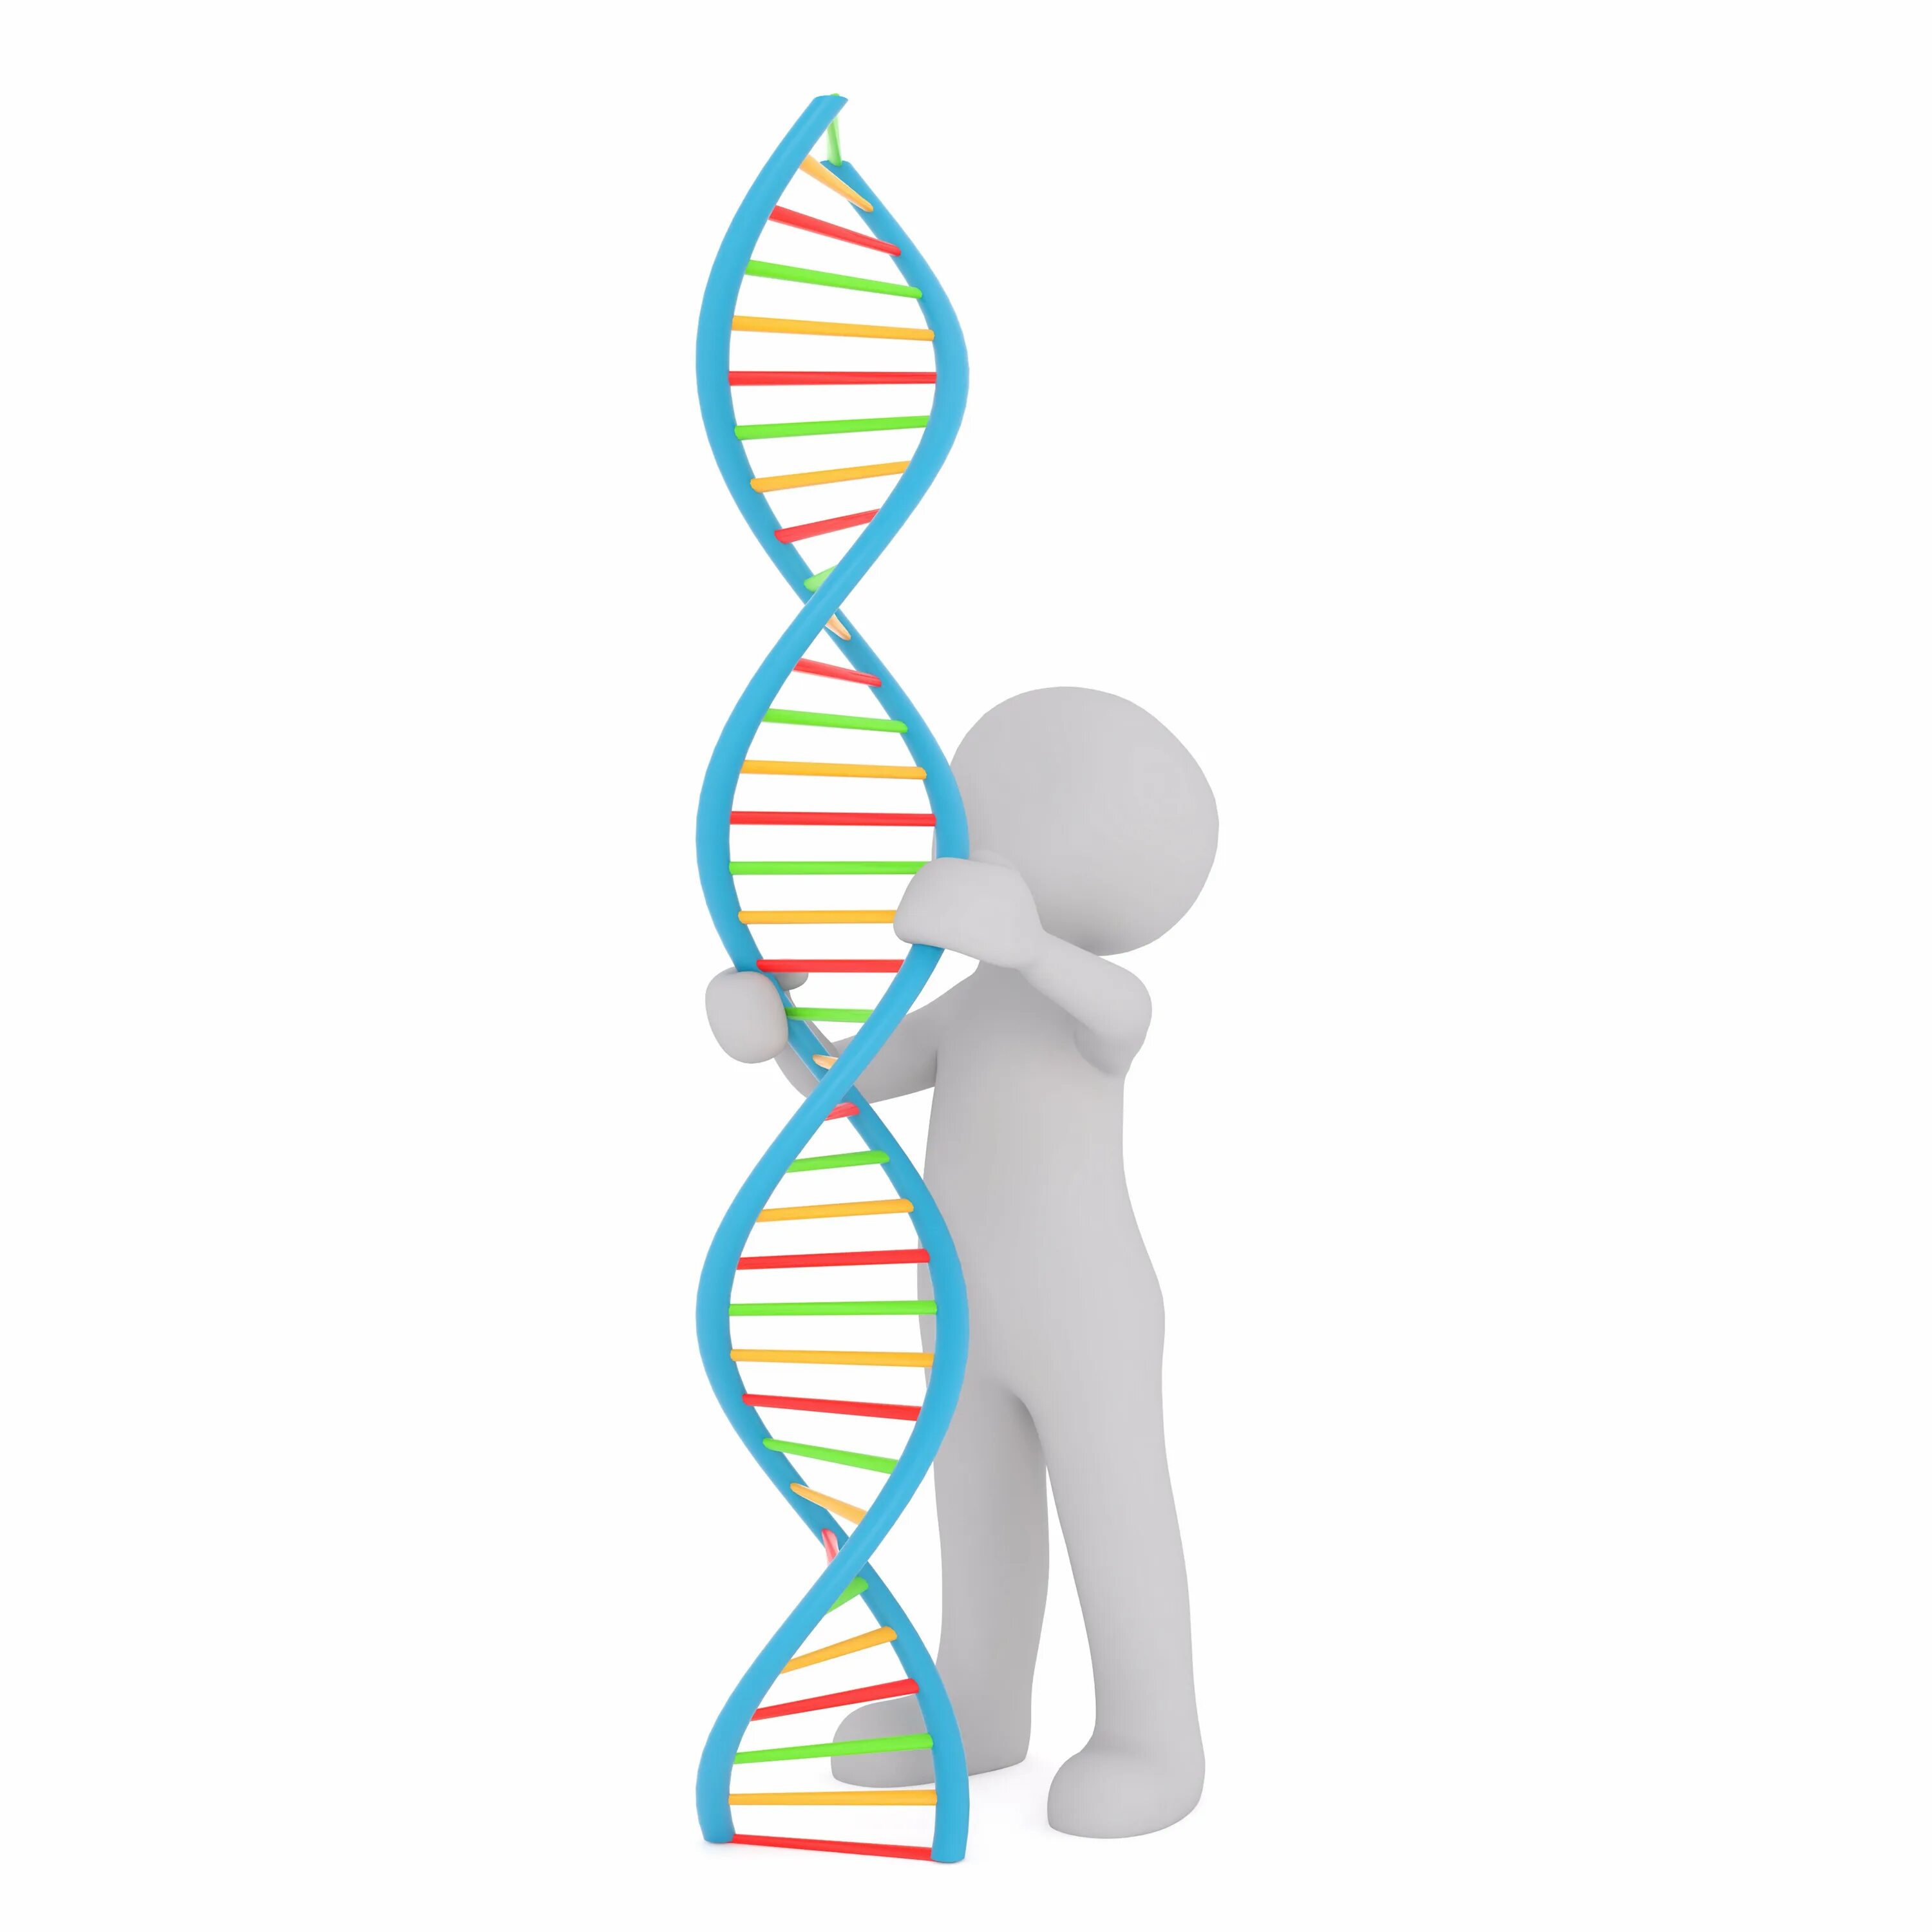 Ген без фона. ДНК на белом фоне. Гены человека. Человеческая ДНК.